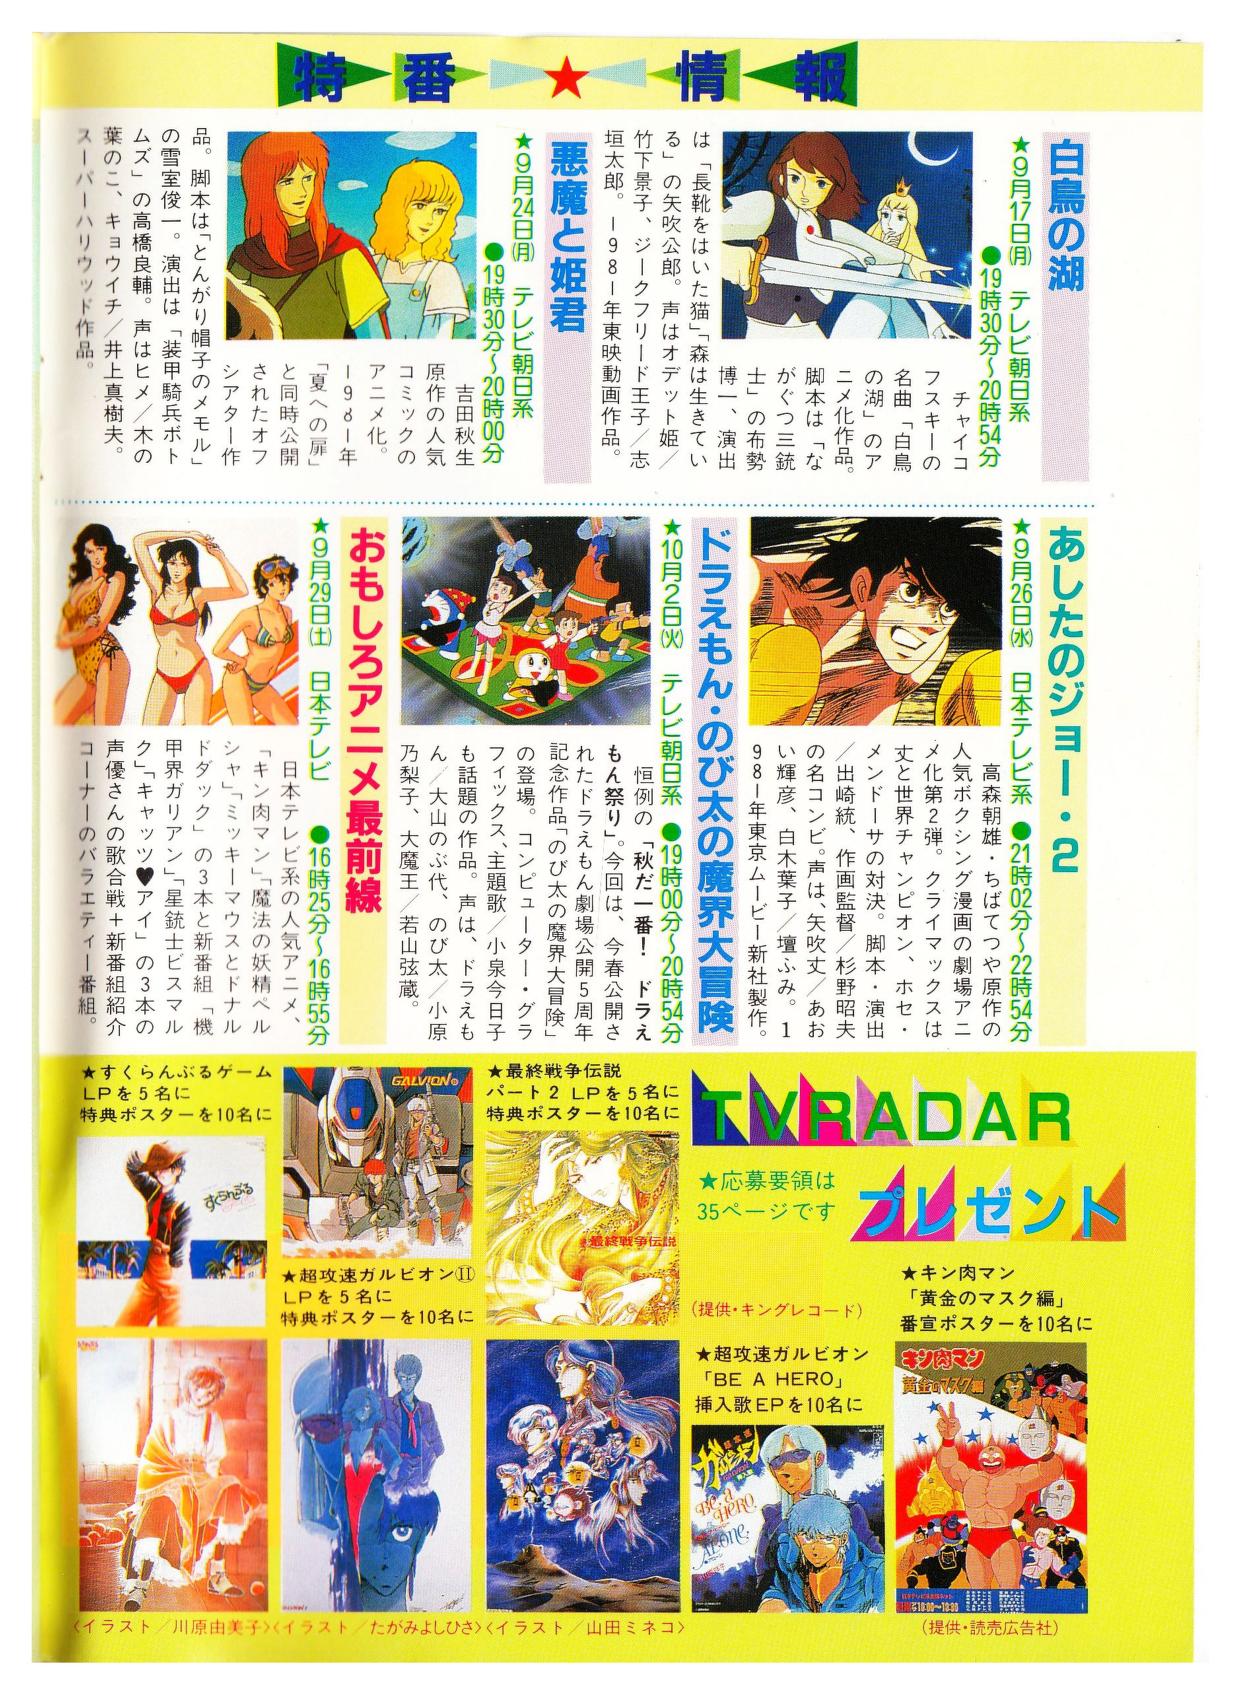 TVアニメ総ガイド TV RADAR 1984年9月 : マイアニメ : Free Download 